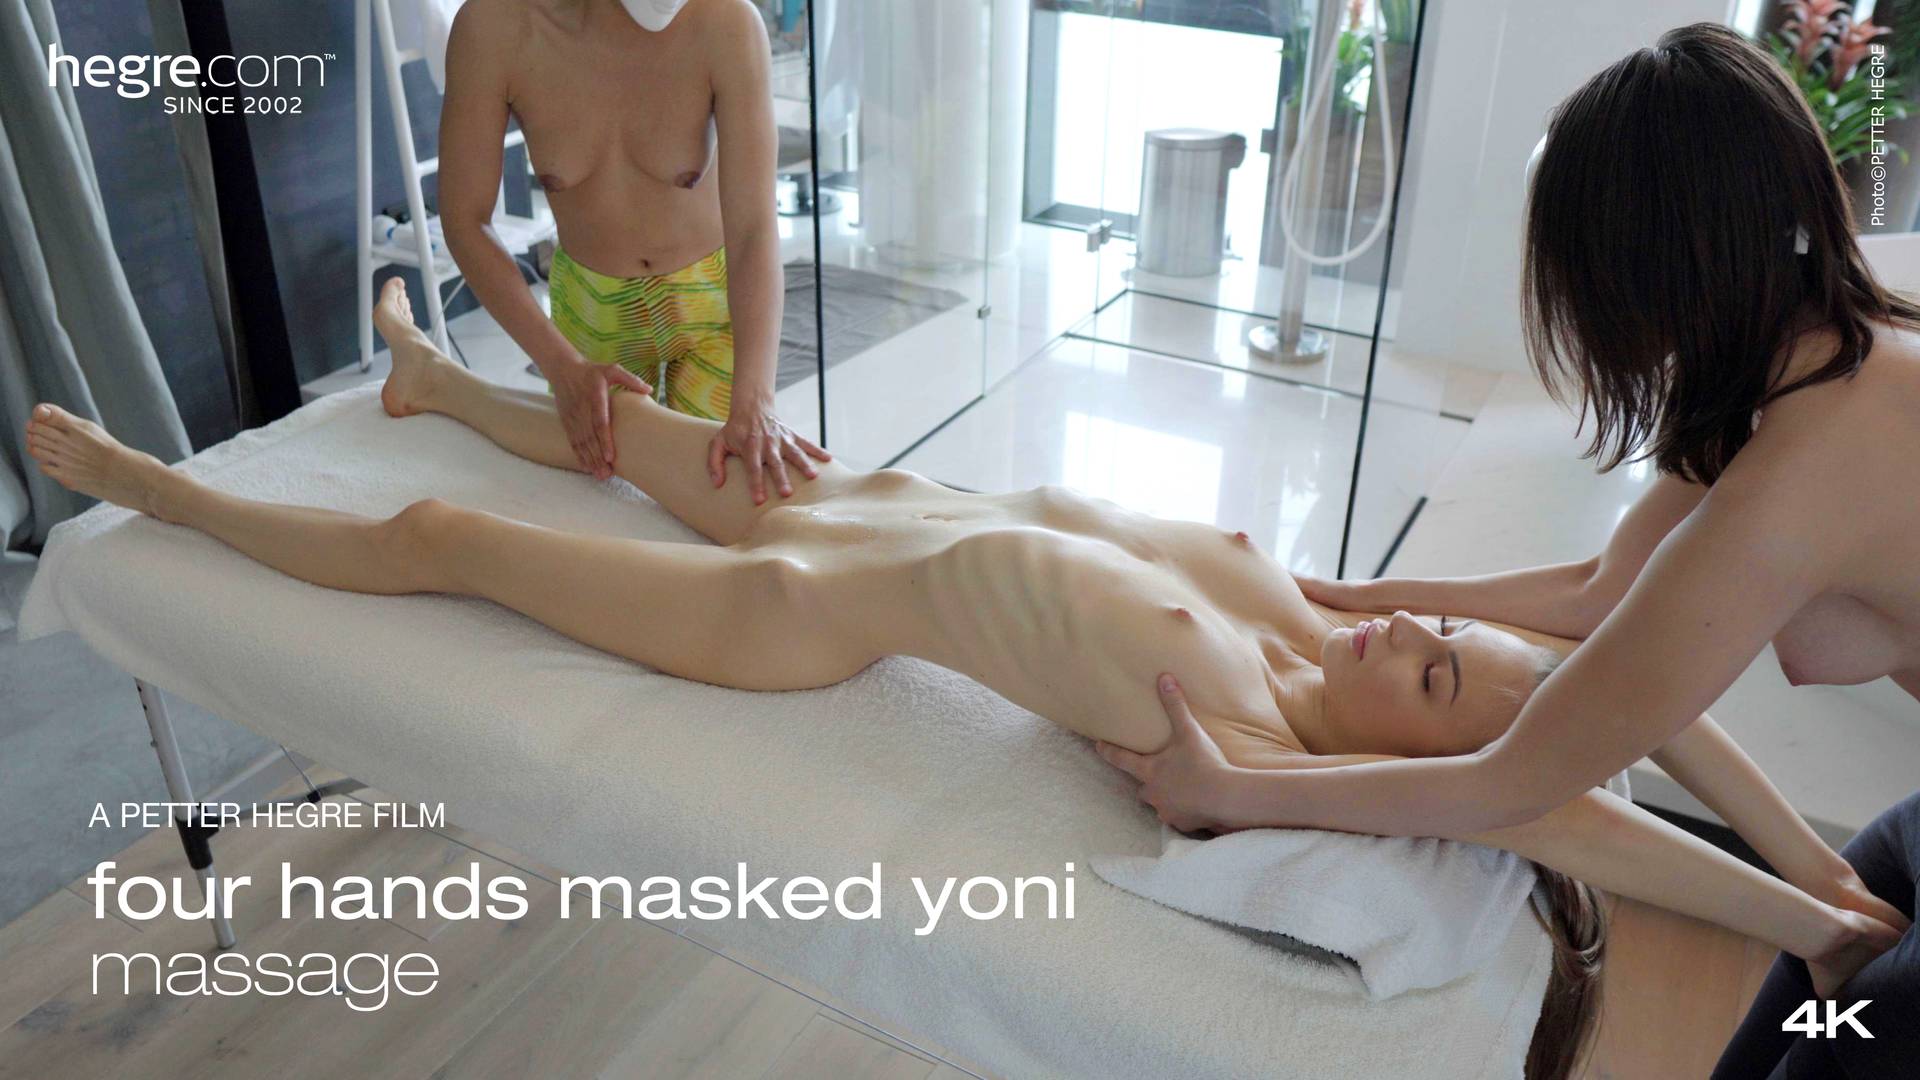 bobby parrish add photo video of yoni massage